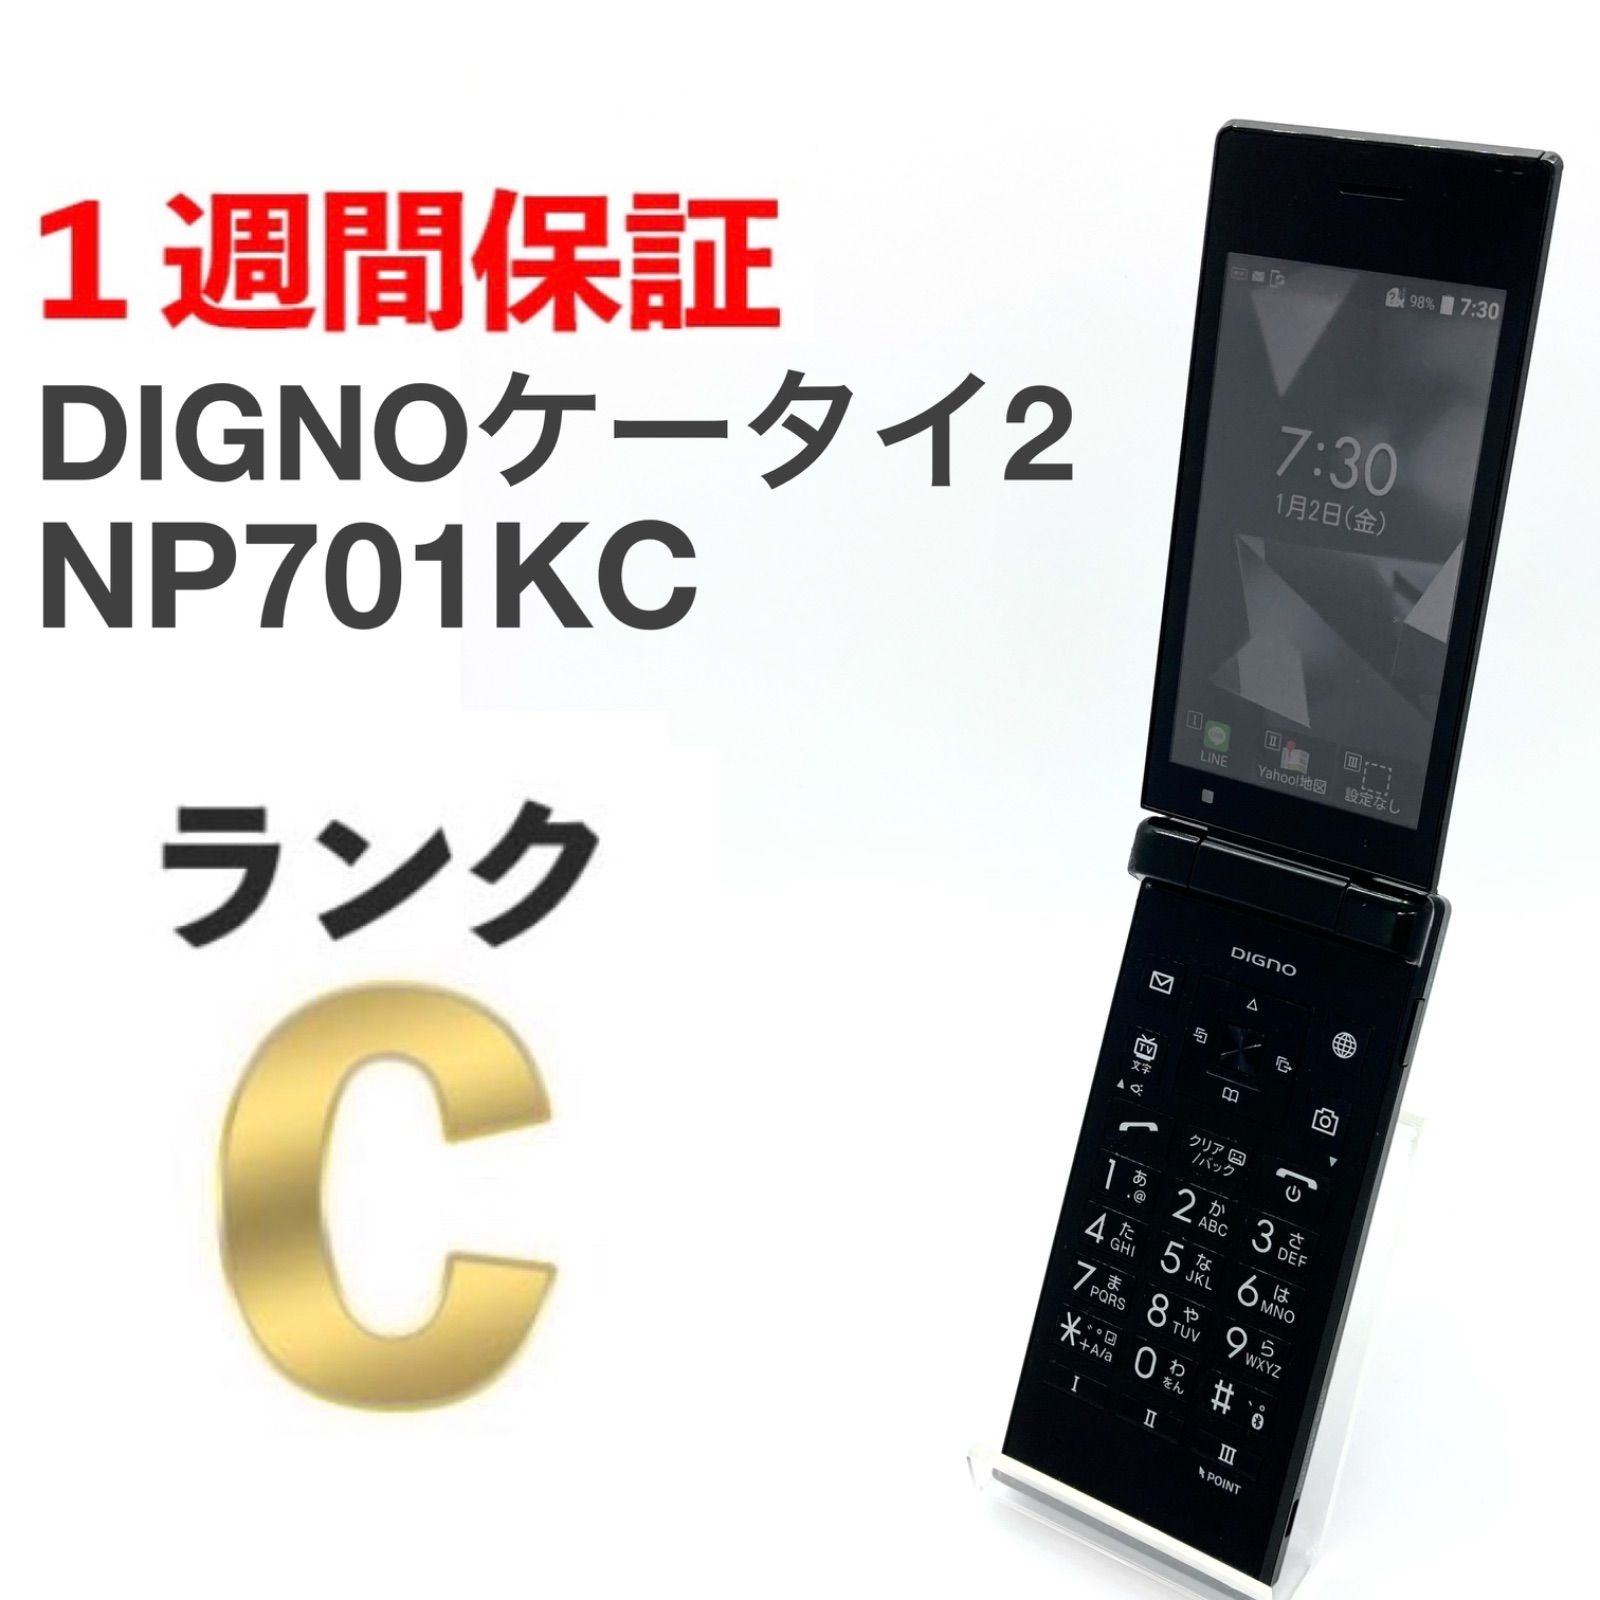 新品 701KC DIGNO ケータイ2 ブラック